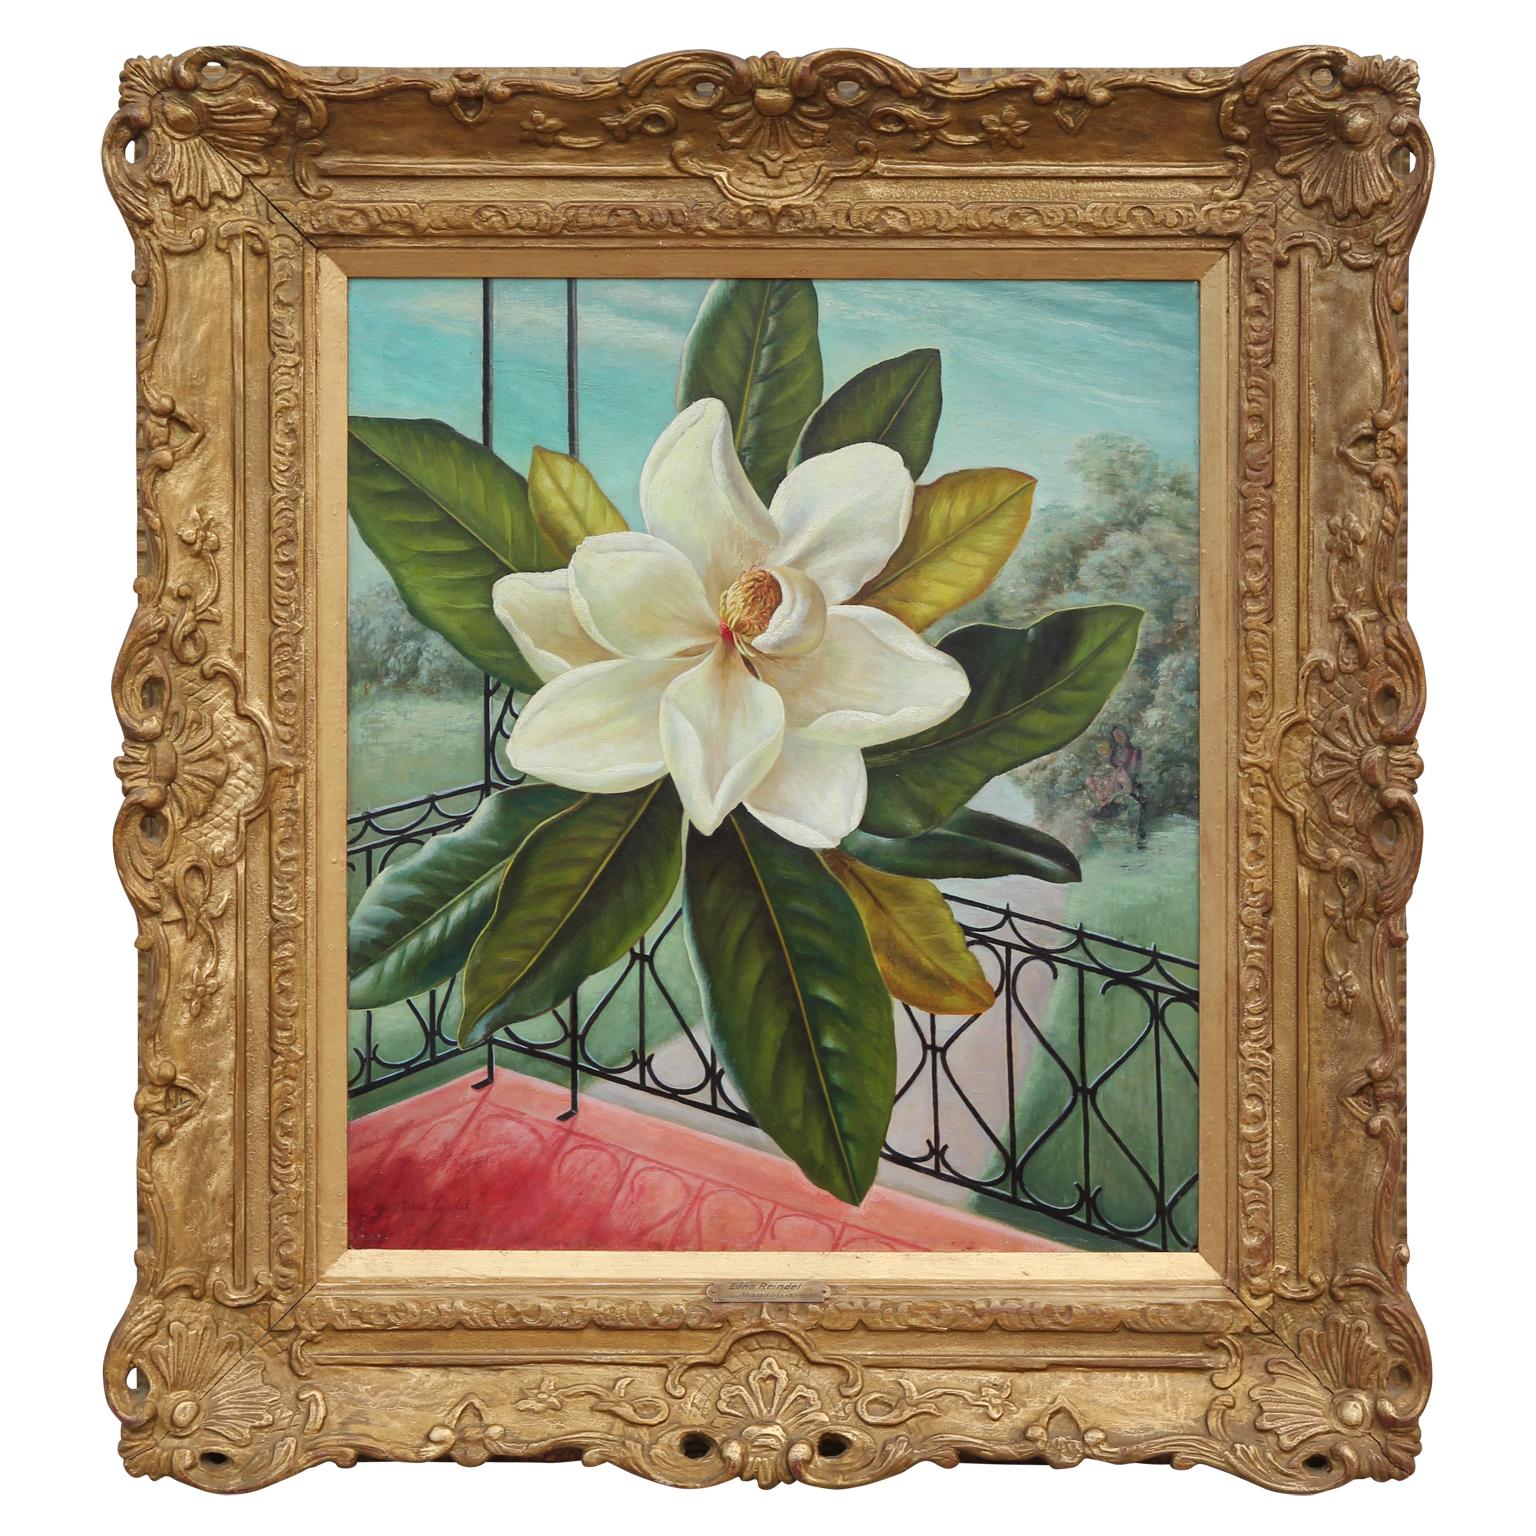 Cette peinture à l'huile colorée comprend la représentation d'une fleur de magnolia du Sud au centre de la composition. 
On pense qu'il a été présenté dans le calendrier 1947 de la société John Morrell, qui a demandé à Edna Reindel de réaliser une